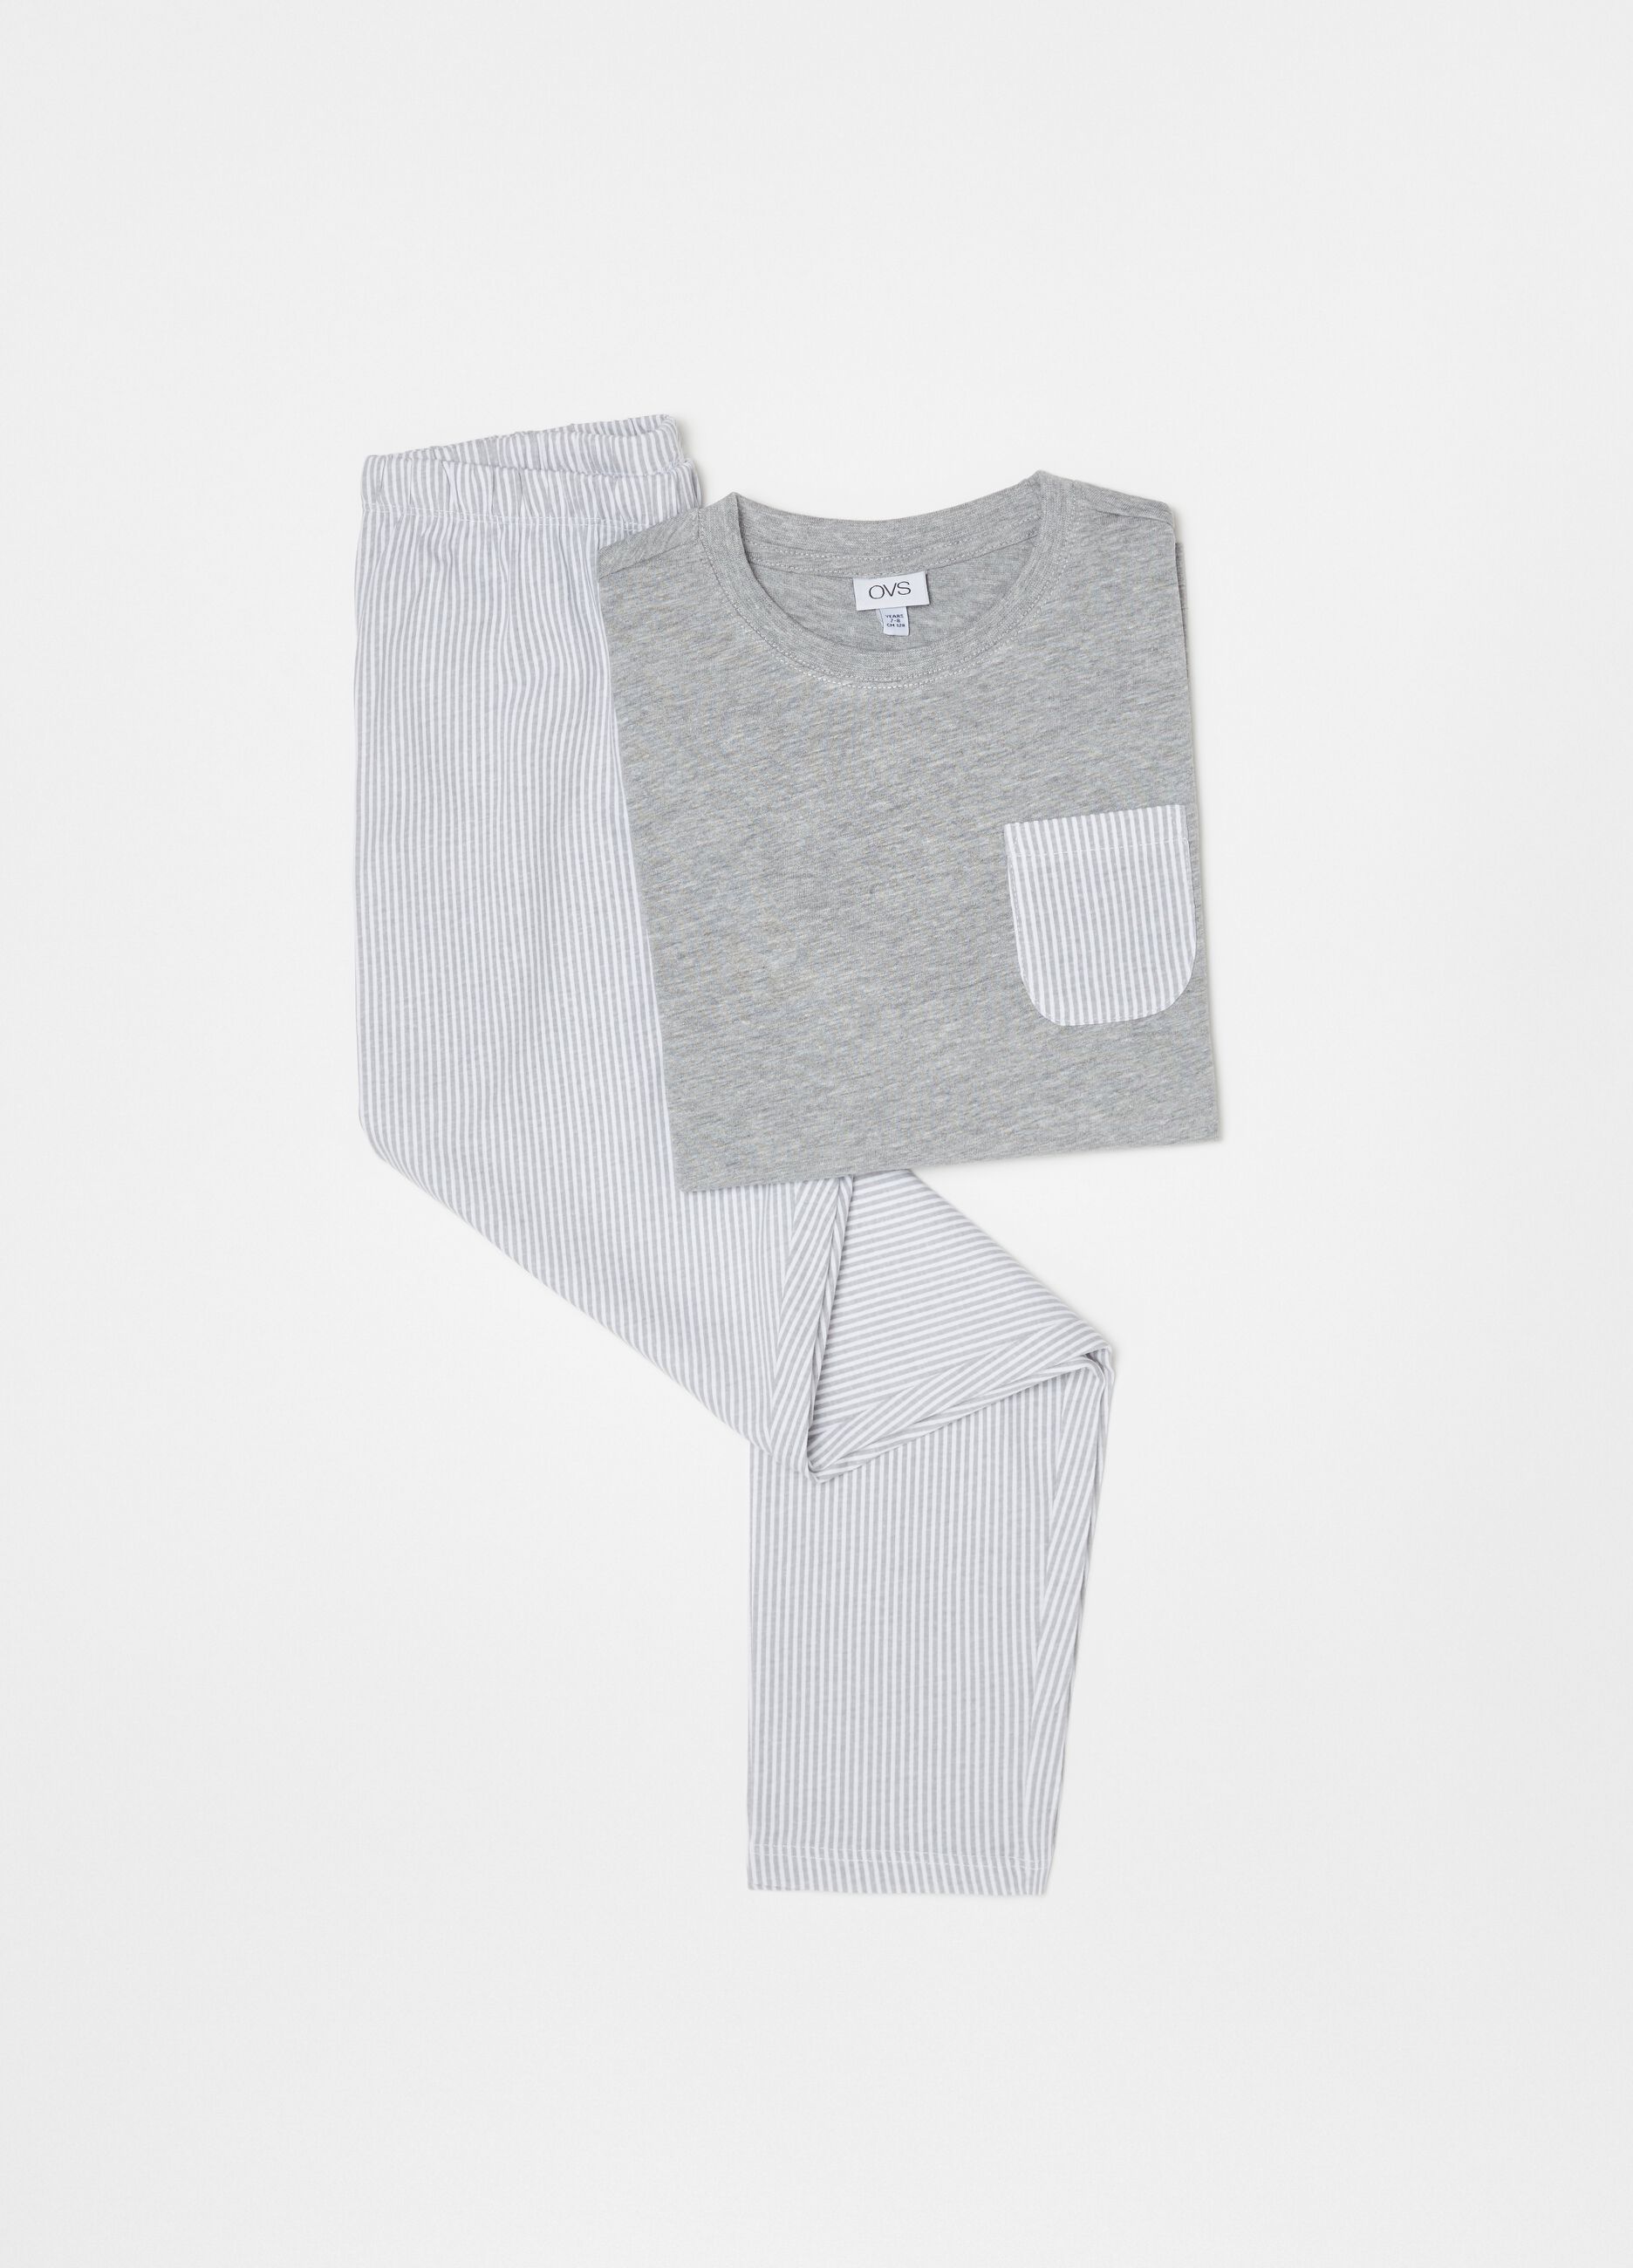 Pijama algodón 100% bolsillo de rayas